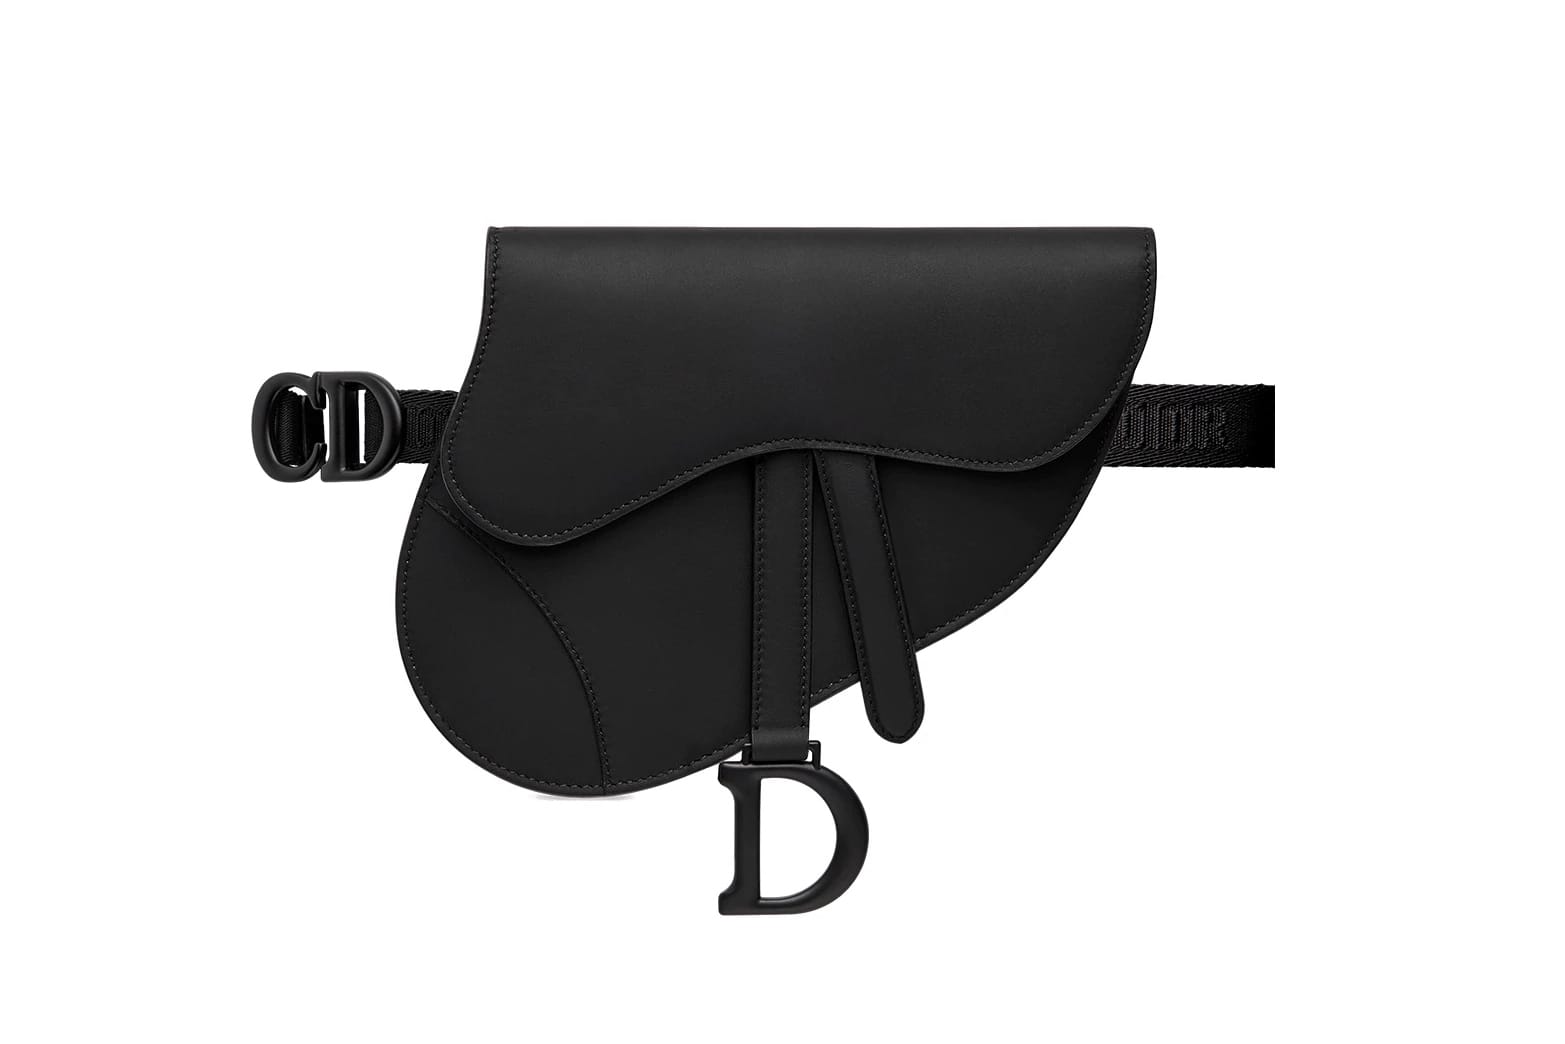 dior matte black saddle bag